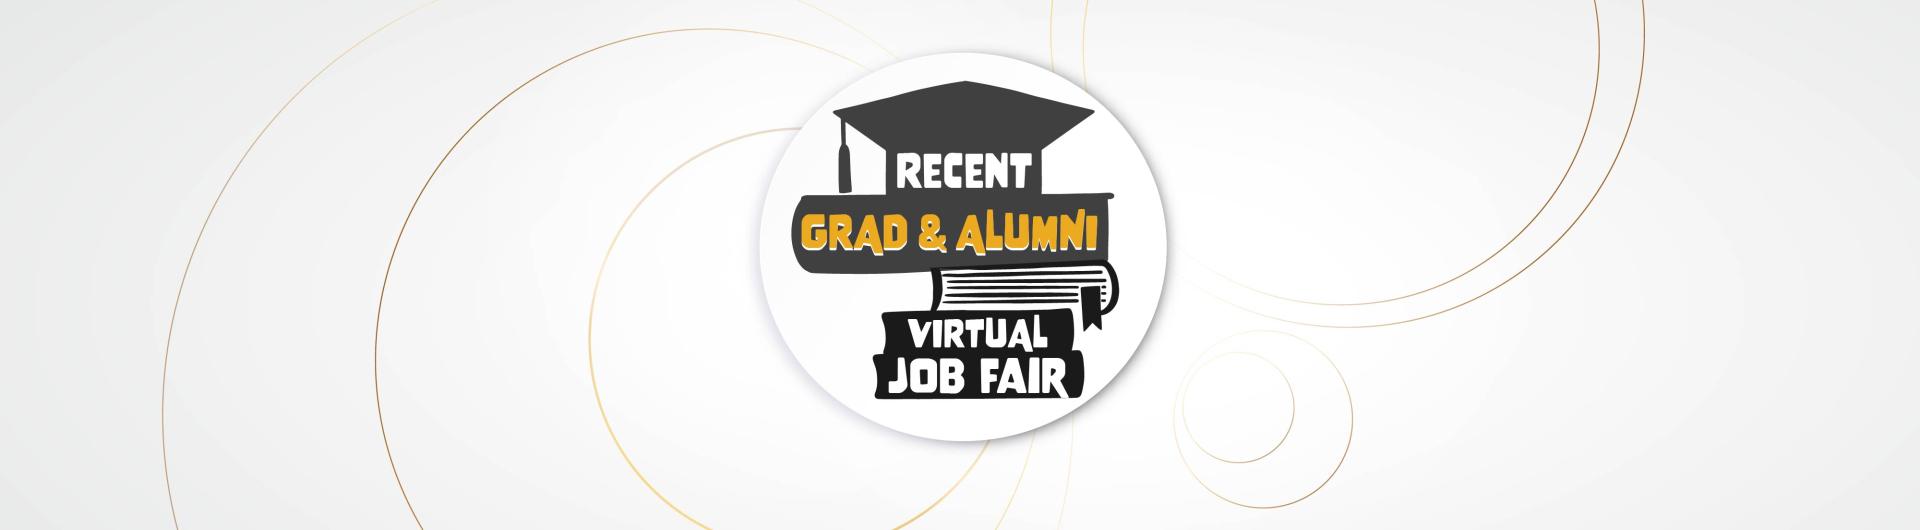 Recent Grad & Alumni Job Fair Banner